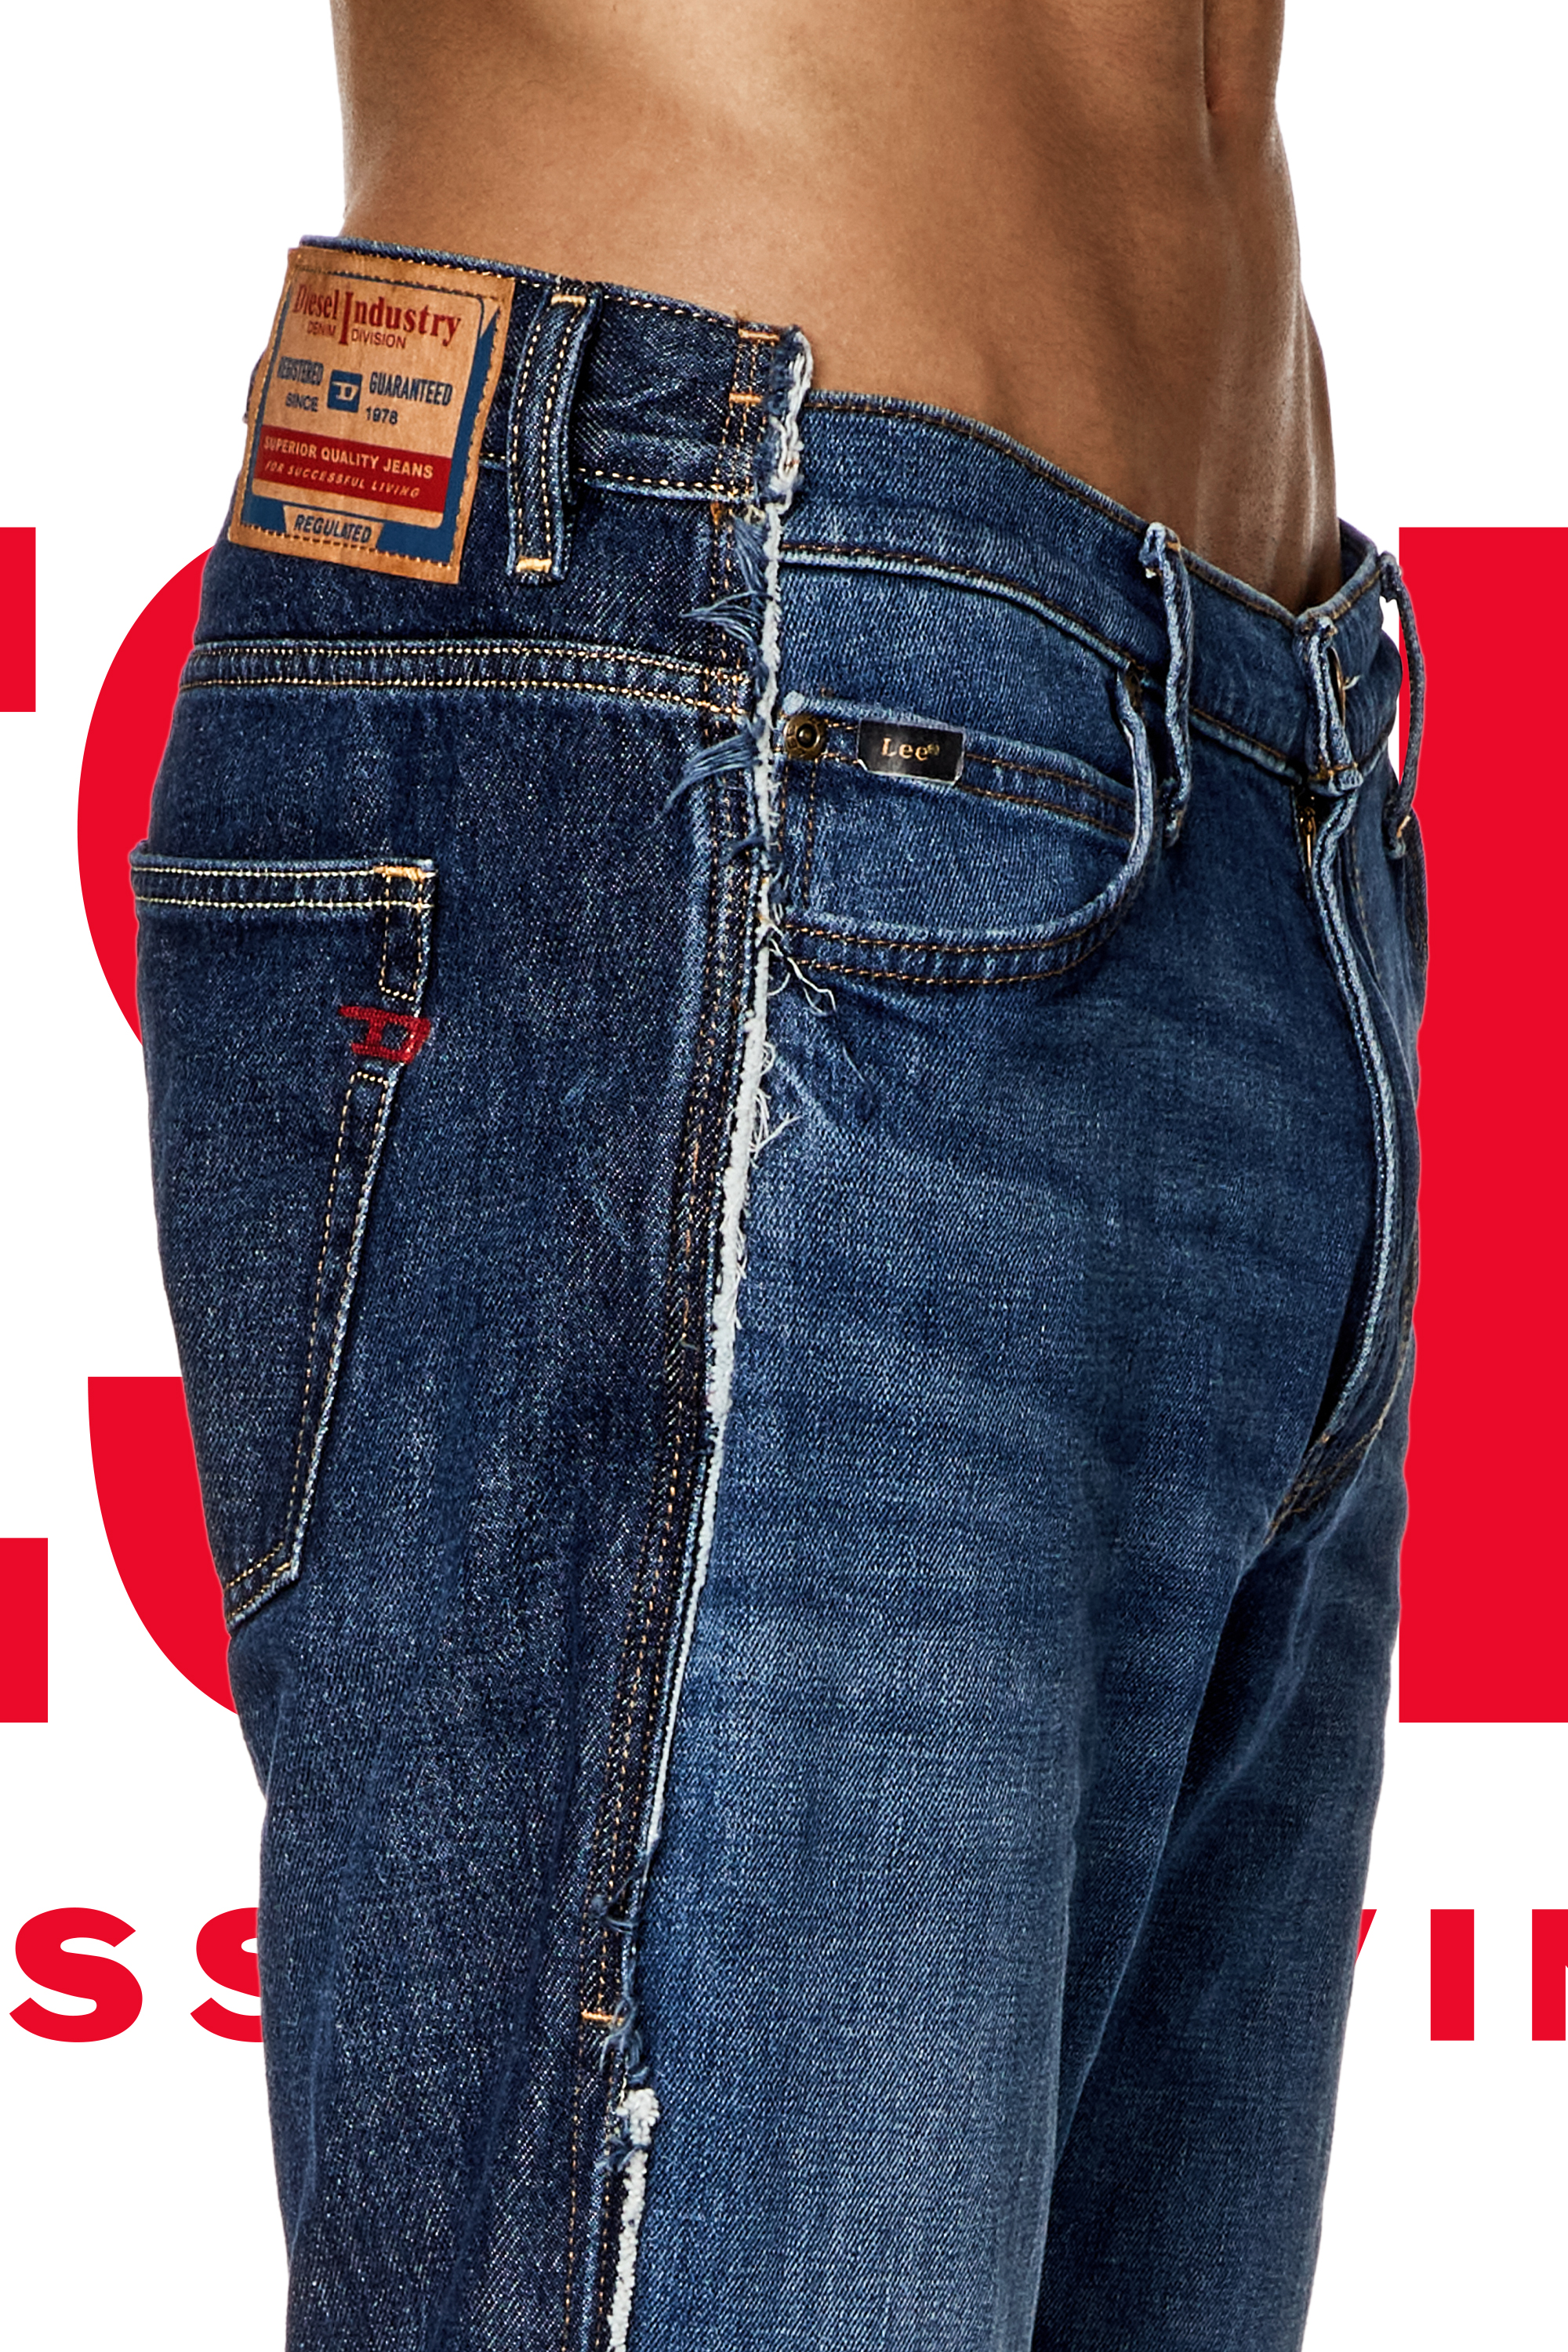 Diesel Men's Jeans: Straight, Tapered, Slim, Bootcut, Skinny